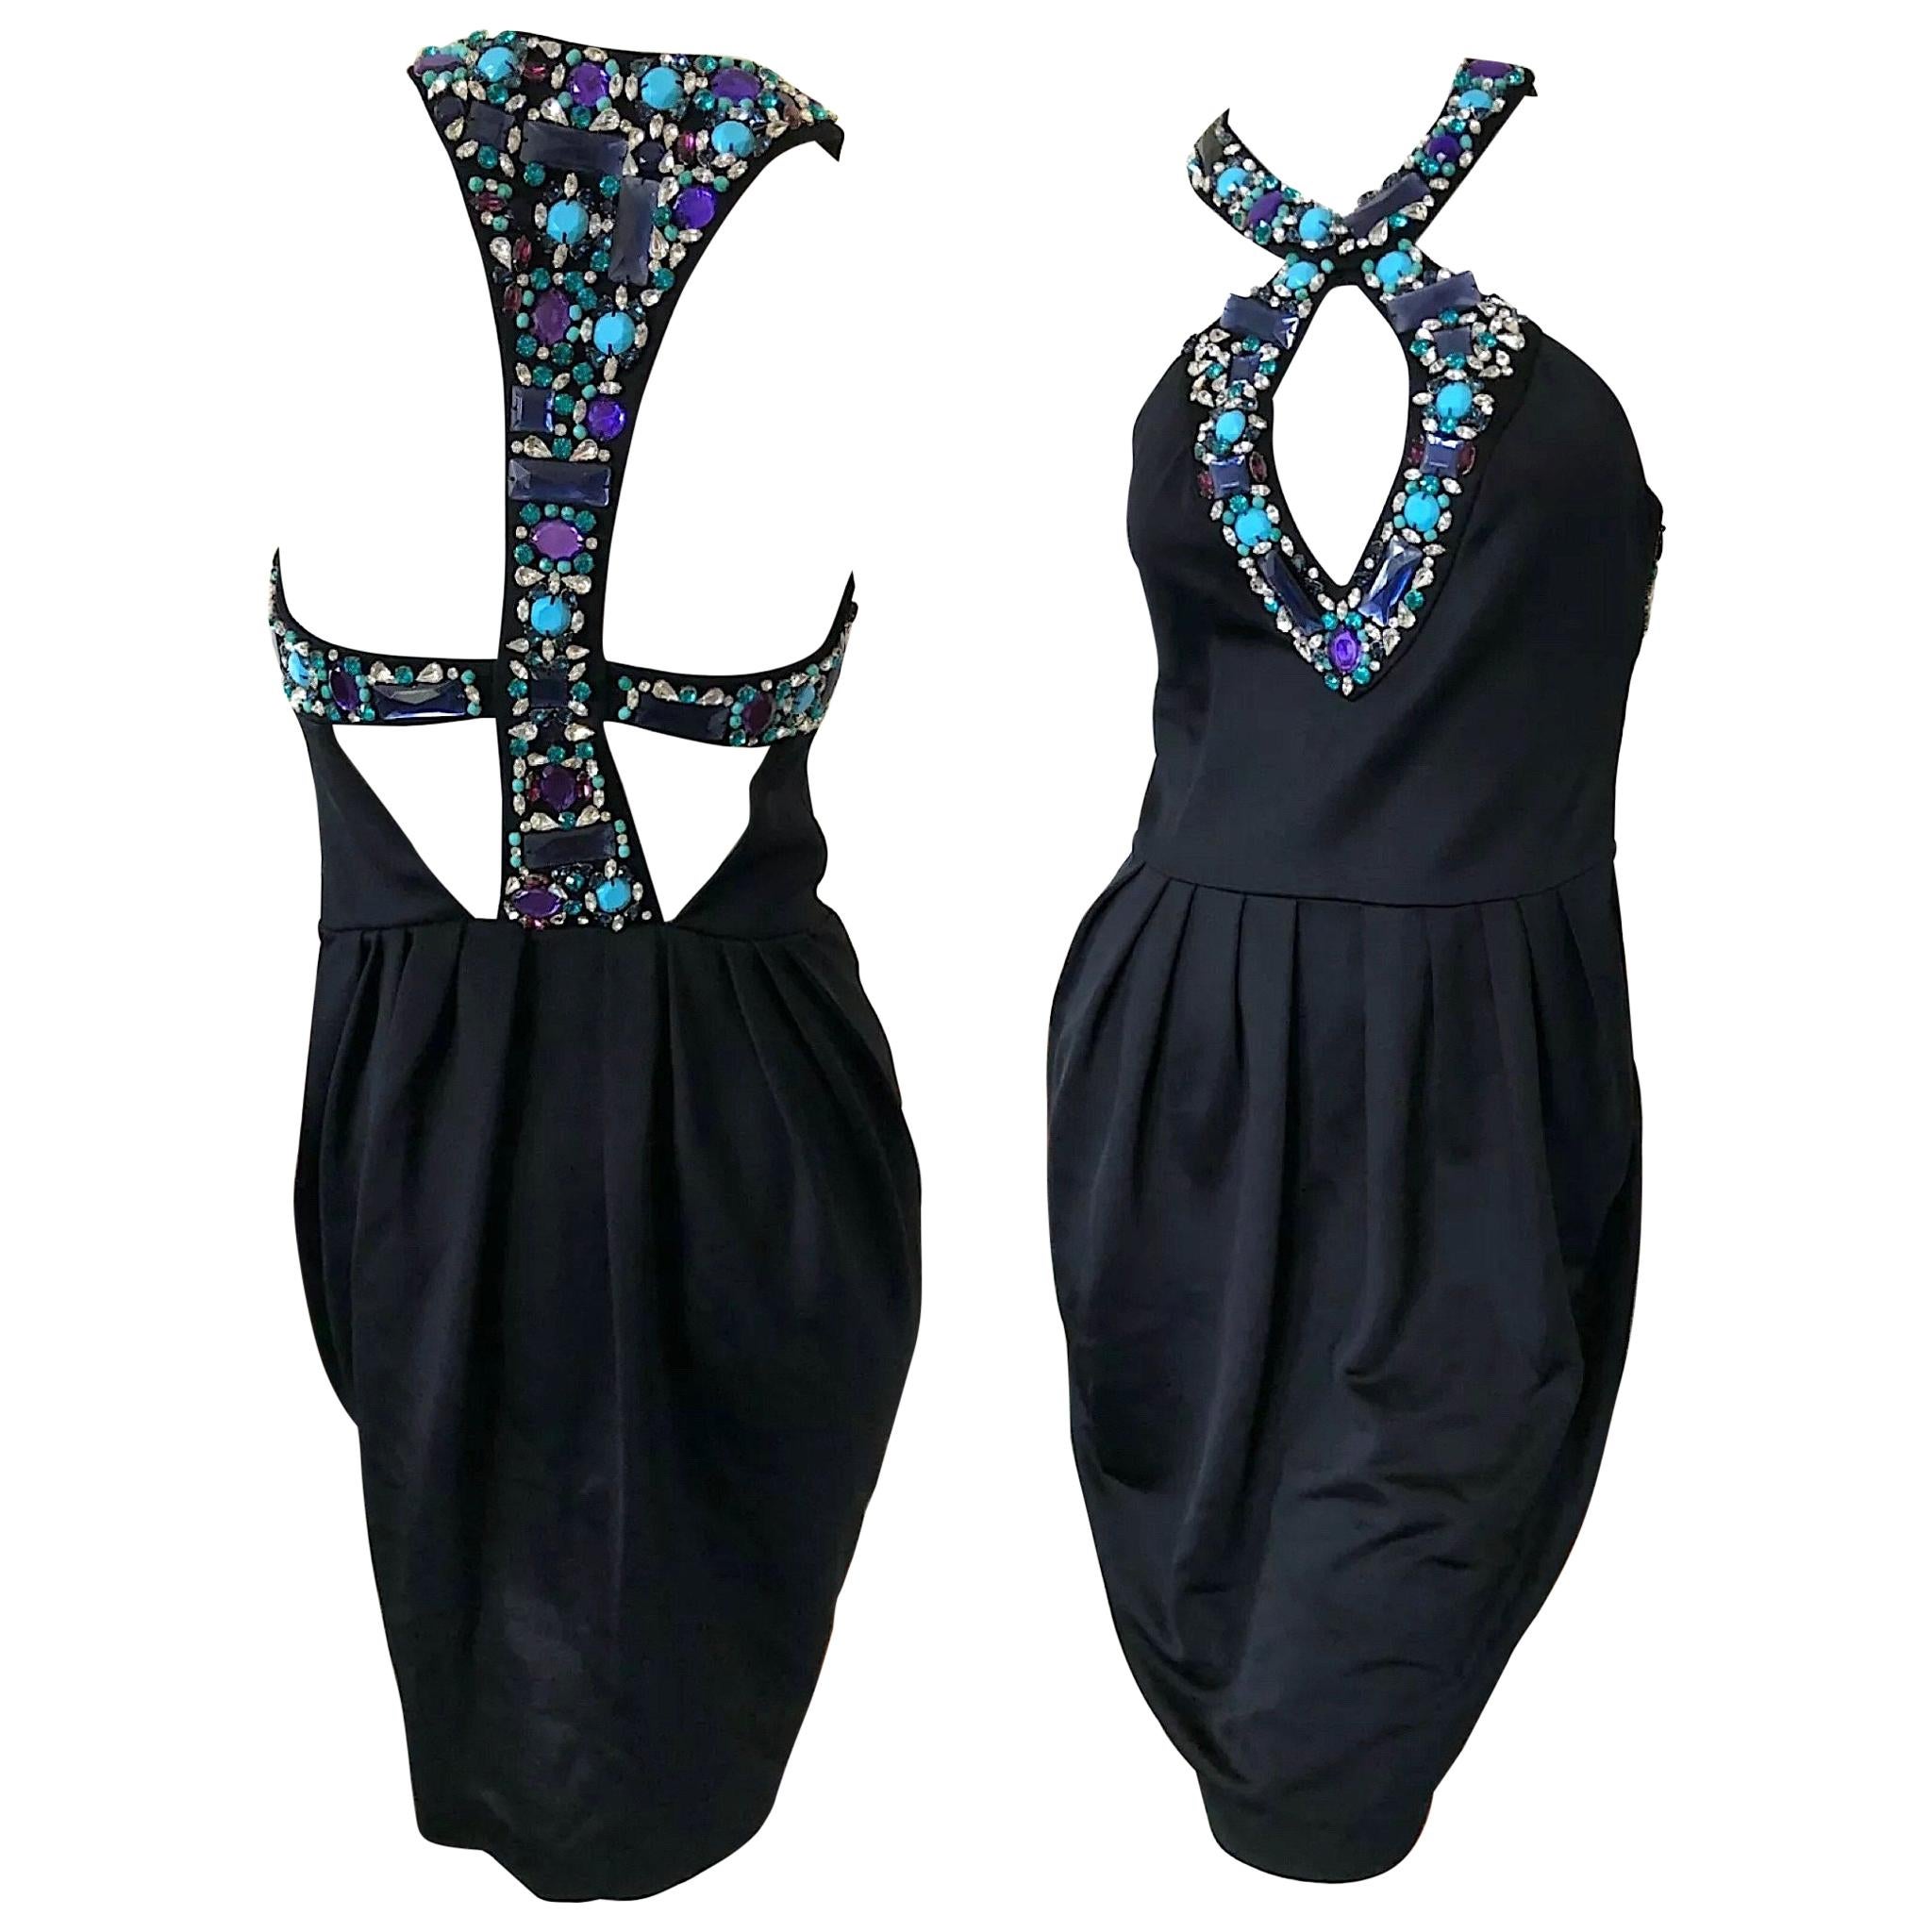 Emilio Pucci Lacroix Era Little Black Dress w Gobsmacking Jewel Embellishments For Sale